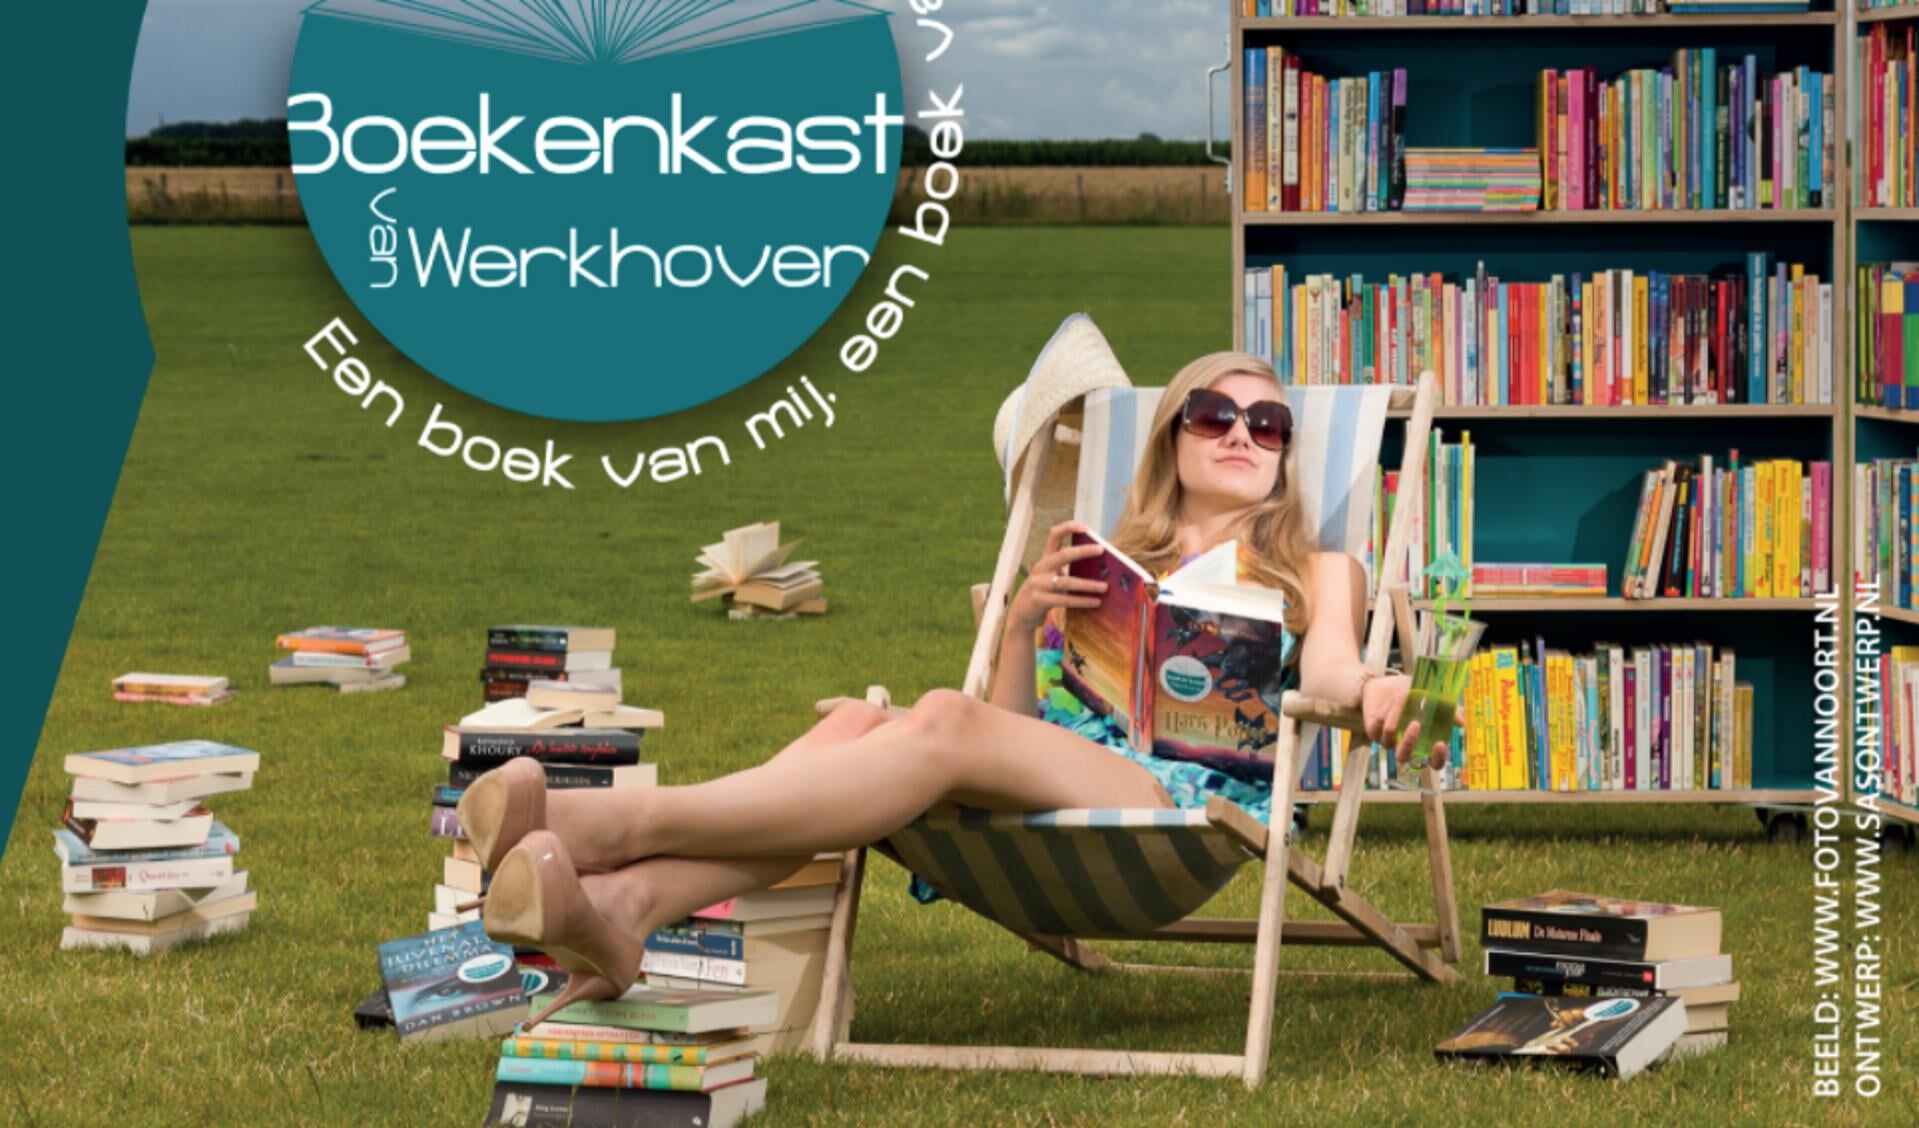 Terugblik op 11 jaar Boekenkast van Werkhoven; wat een dorp samen kan is heel bijzonder - Bunniks Nieuws | Nieuws de Bunnik